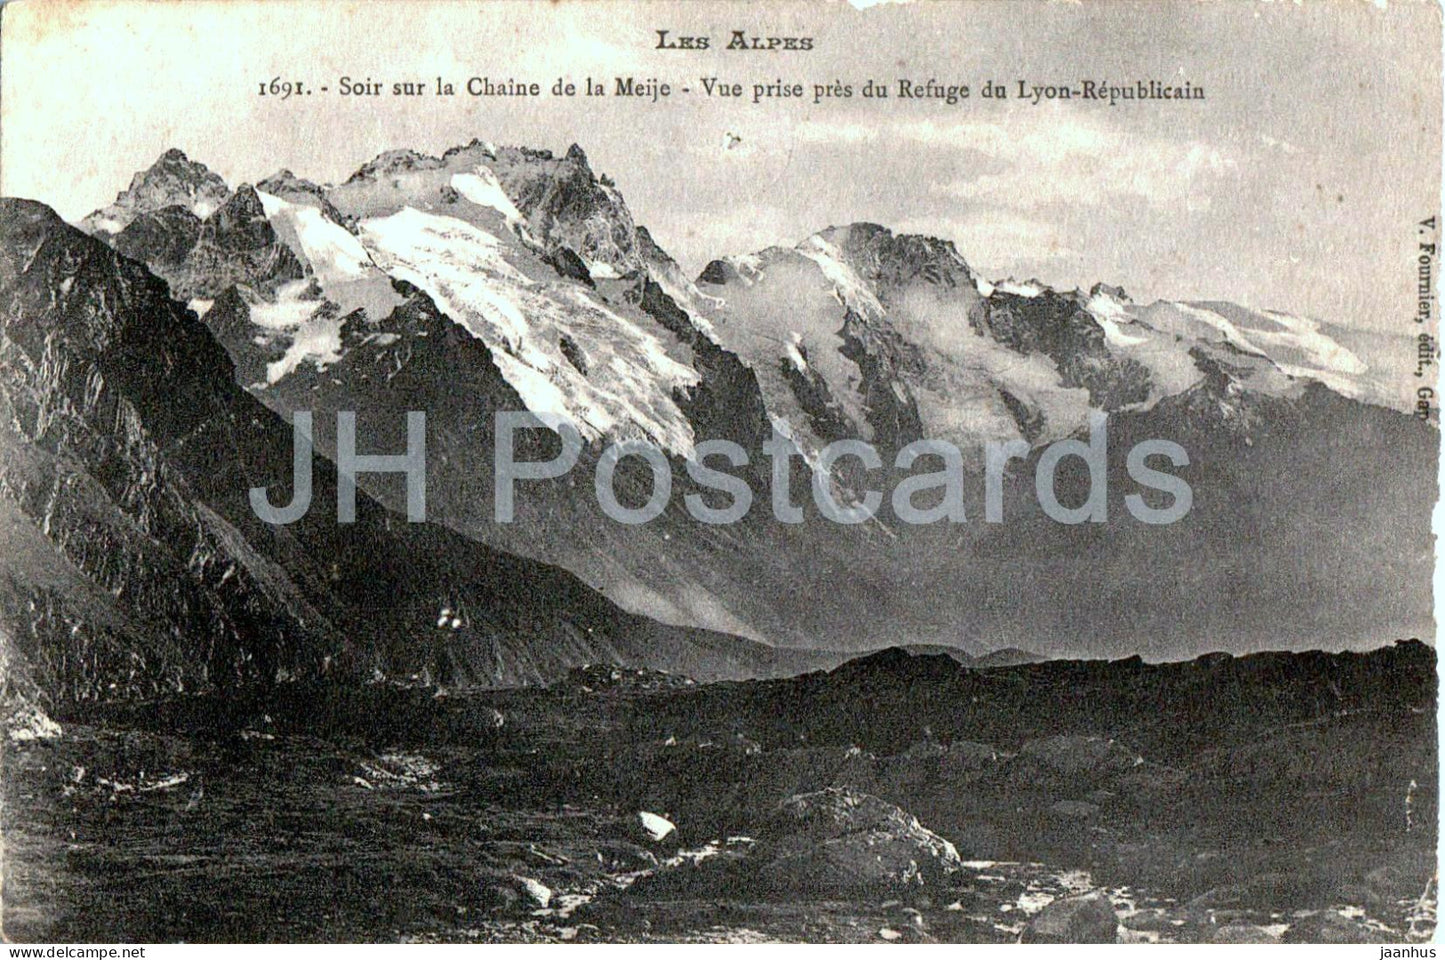 Soir sur la Chaine de la Meije - Vue prise pres du Refuge du Lyon Republicain 1691 - old postcard - 1915 - France - used - JH Postcards